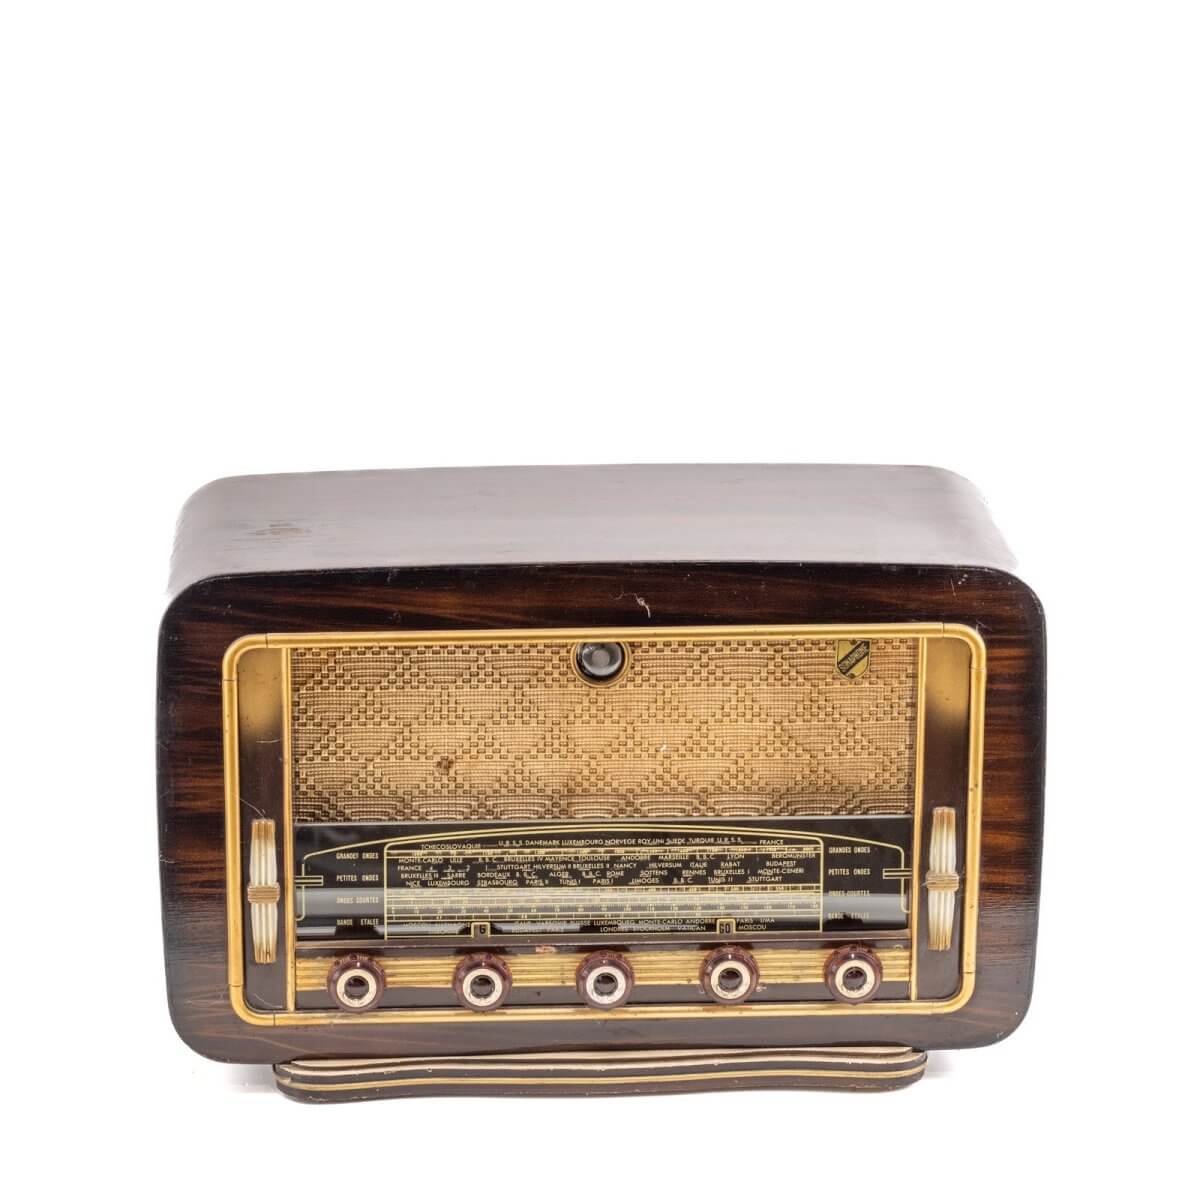 Radio Bluetooth Sonaphone Vintage 50’S-A.bsolument-enceintes-et-radios-vintage-bluetooth